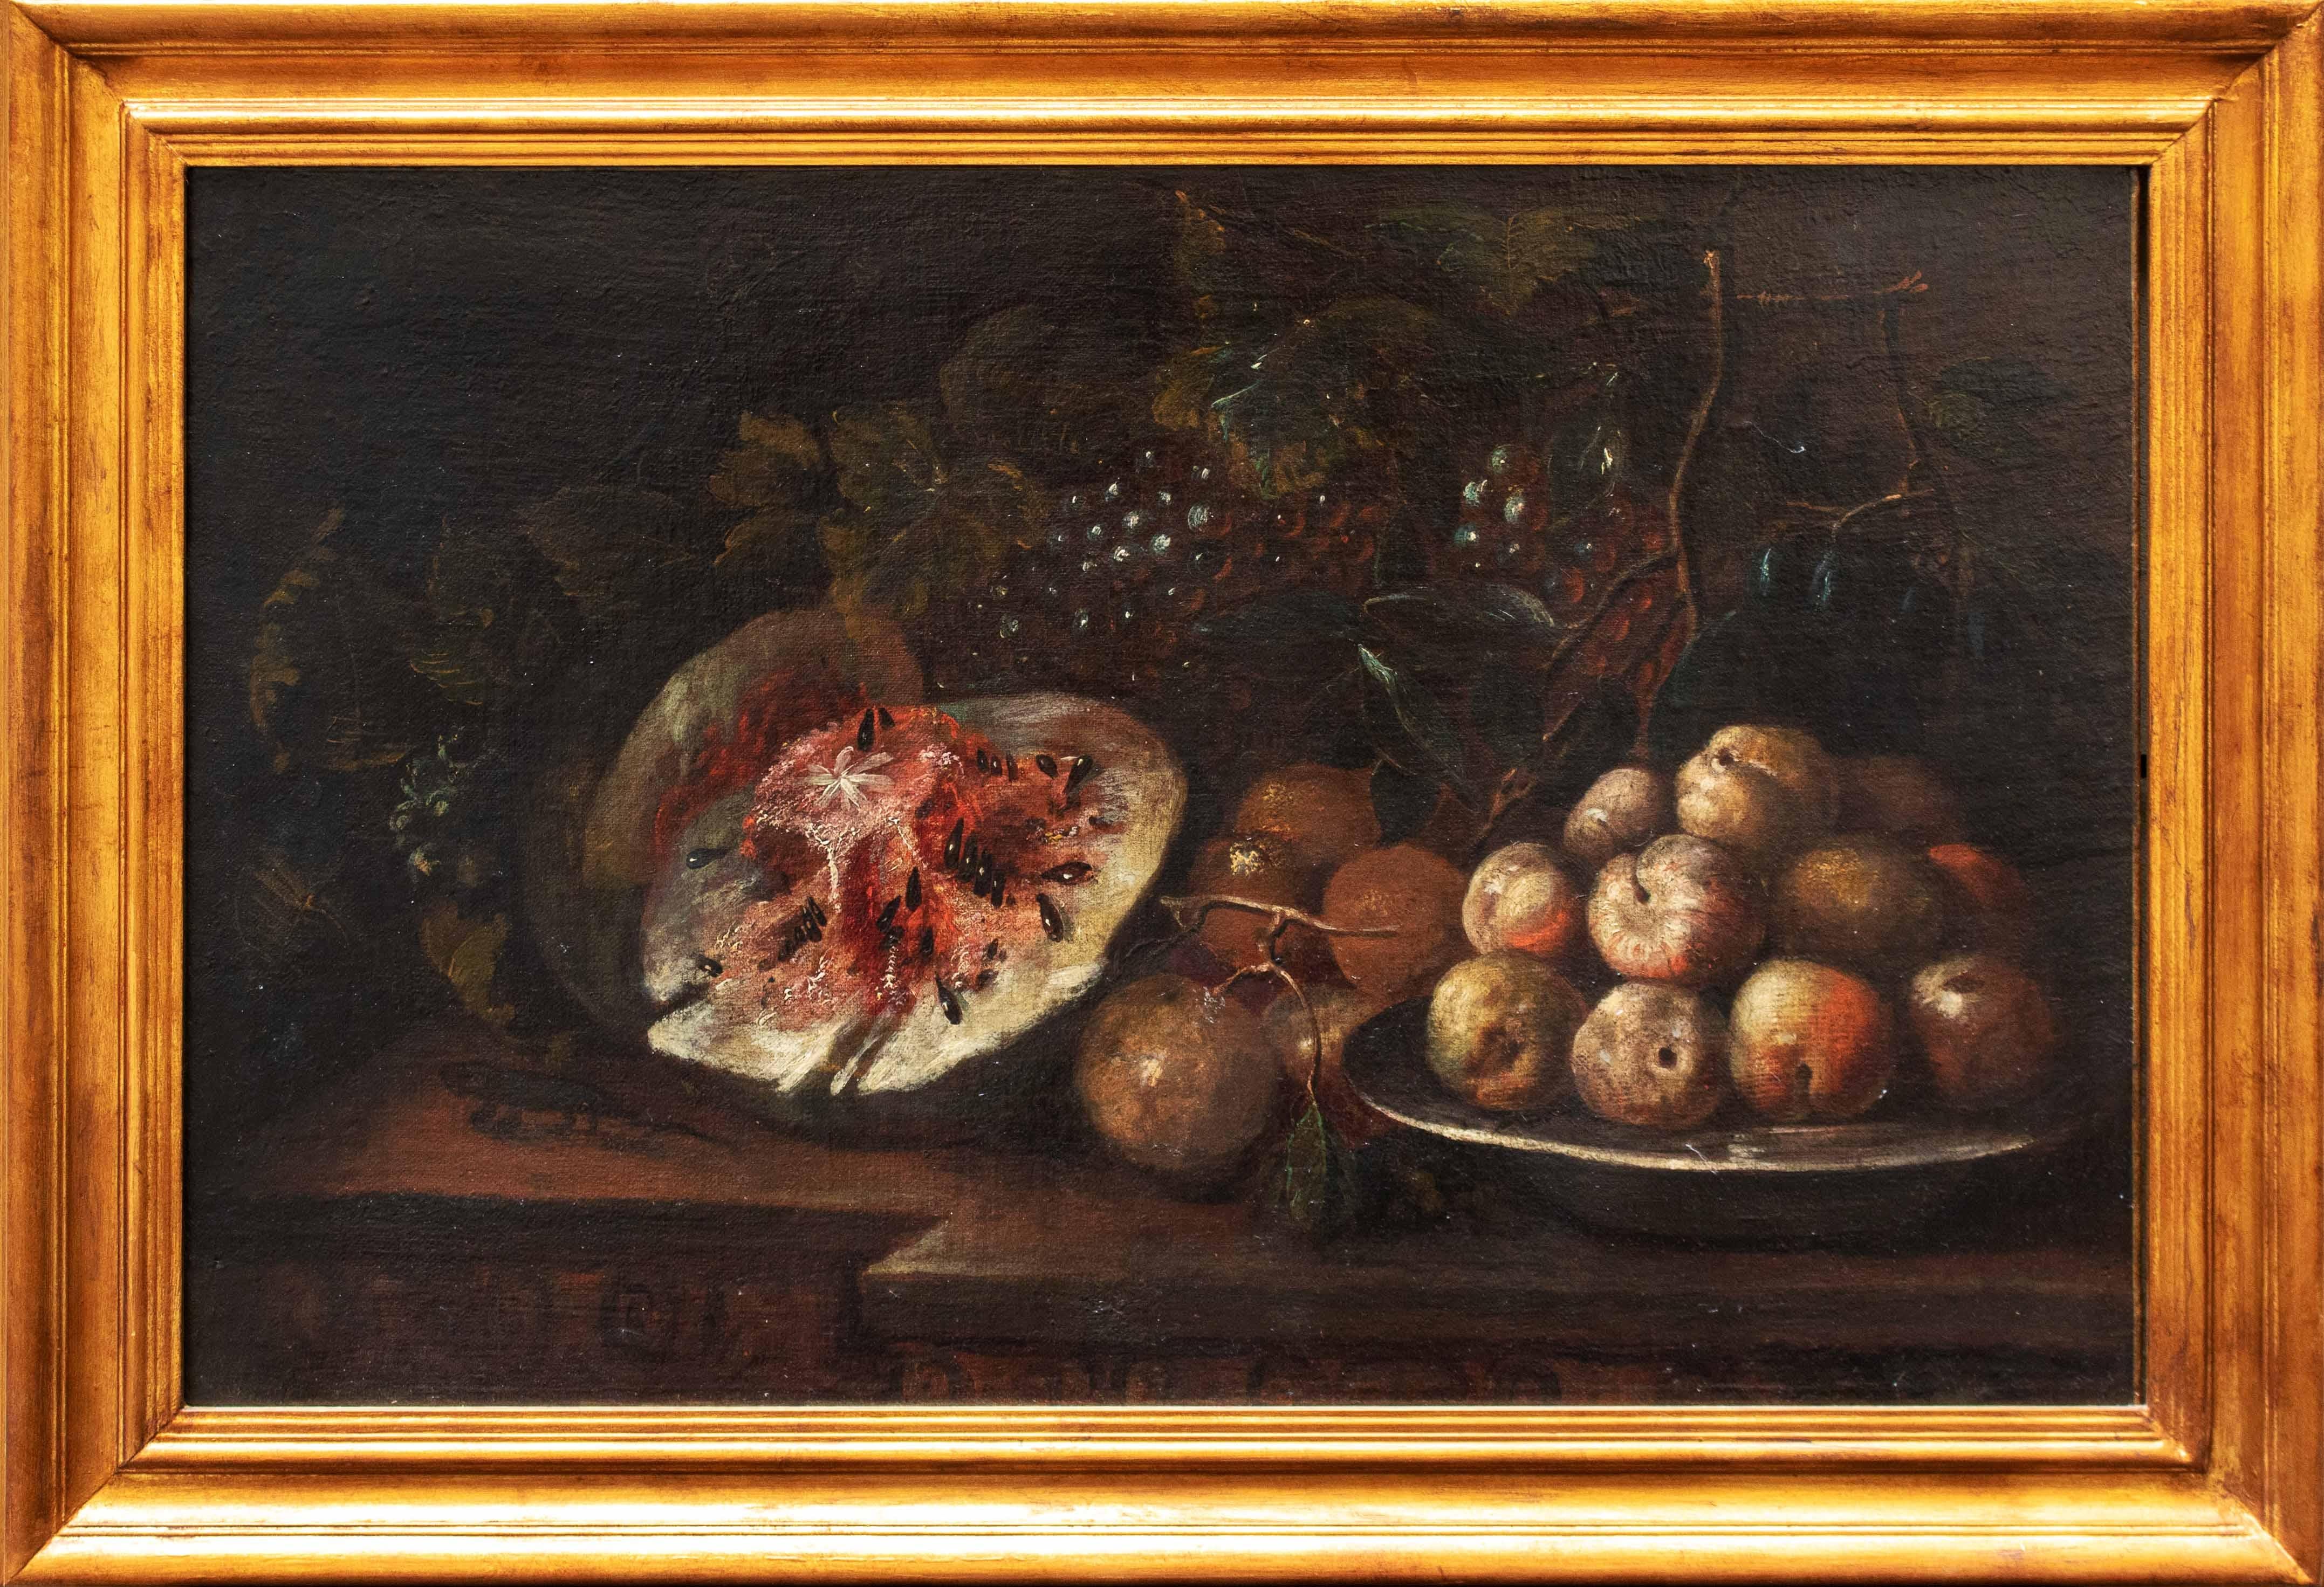 Paolo Paoletti (Padoue, 1671 - Udine, 1735)

Nature morte avec des fruits sur une étagère

Huile sur toile, 53,5 x 81 cm

Expertise Dr. Gianluca Bocchi

La nature morte examinée est attribuable à la main de Paolo Paoletti (1671 -1735). Né à Padoue,